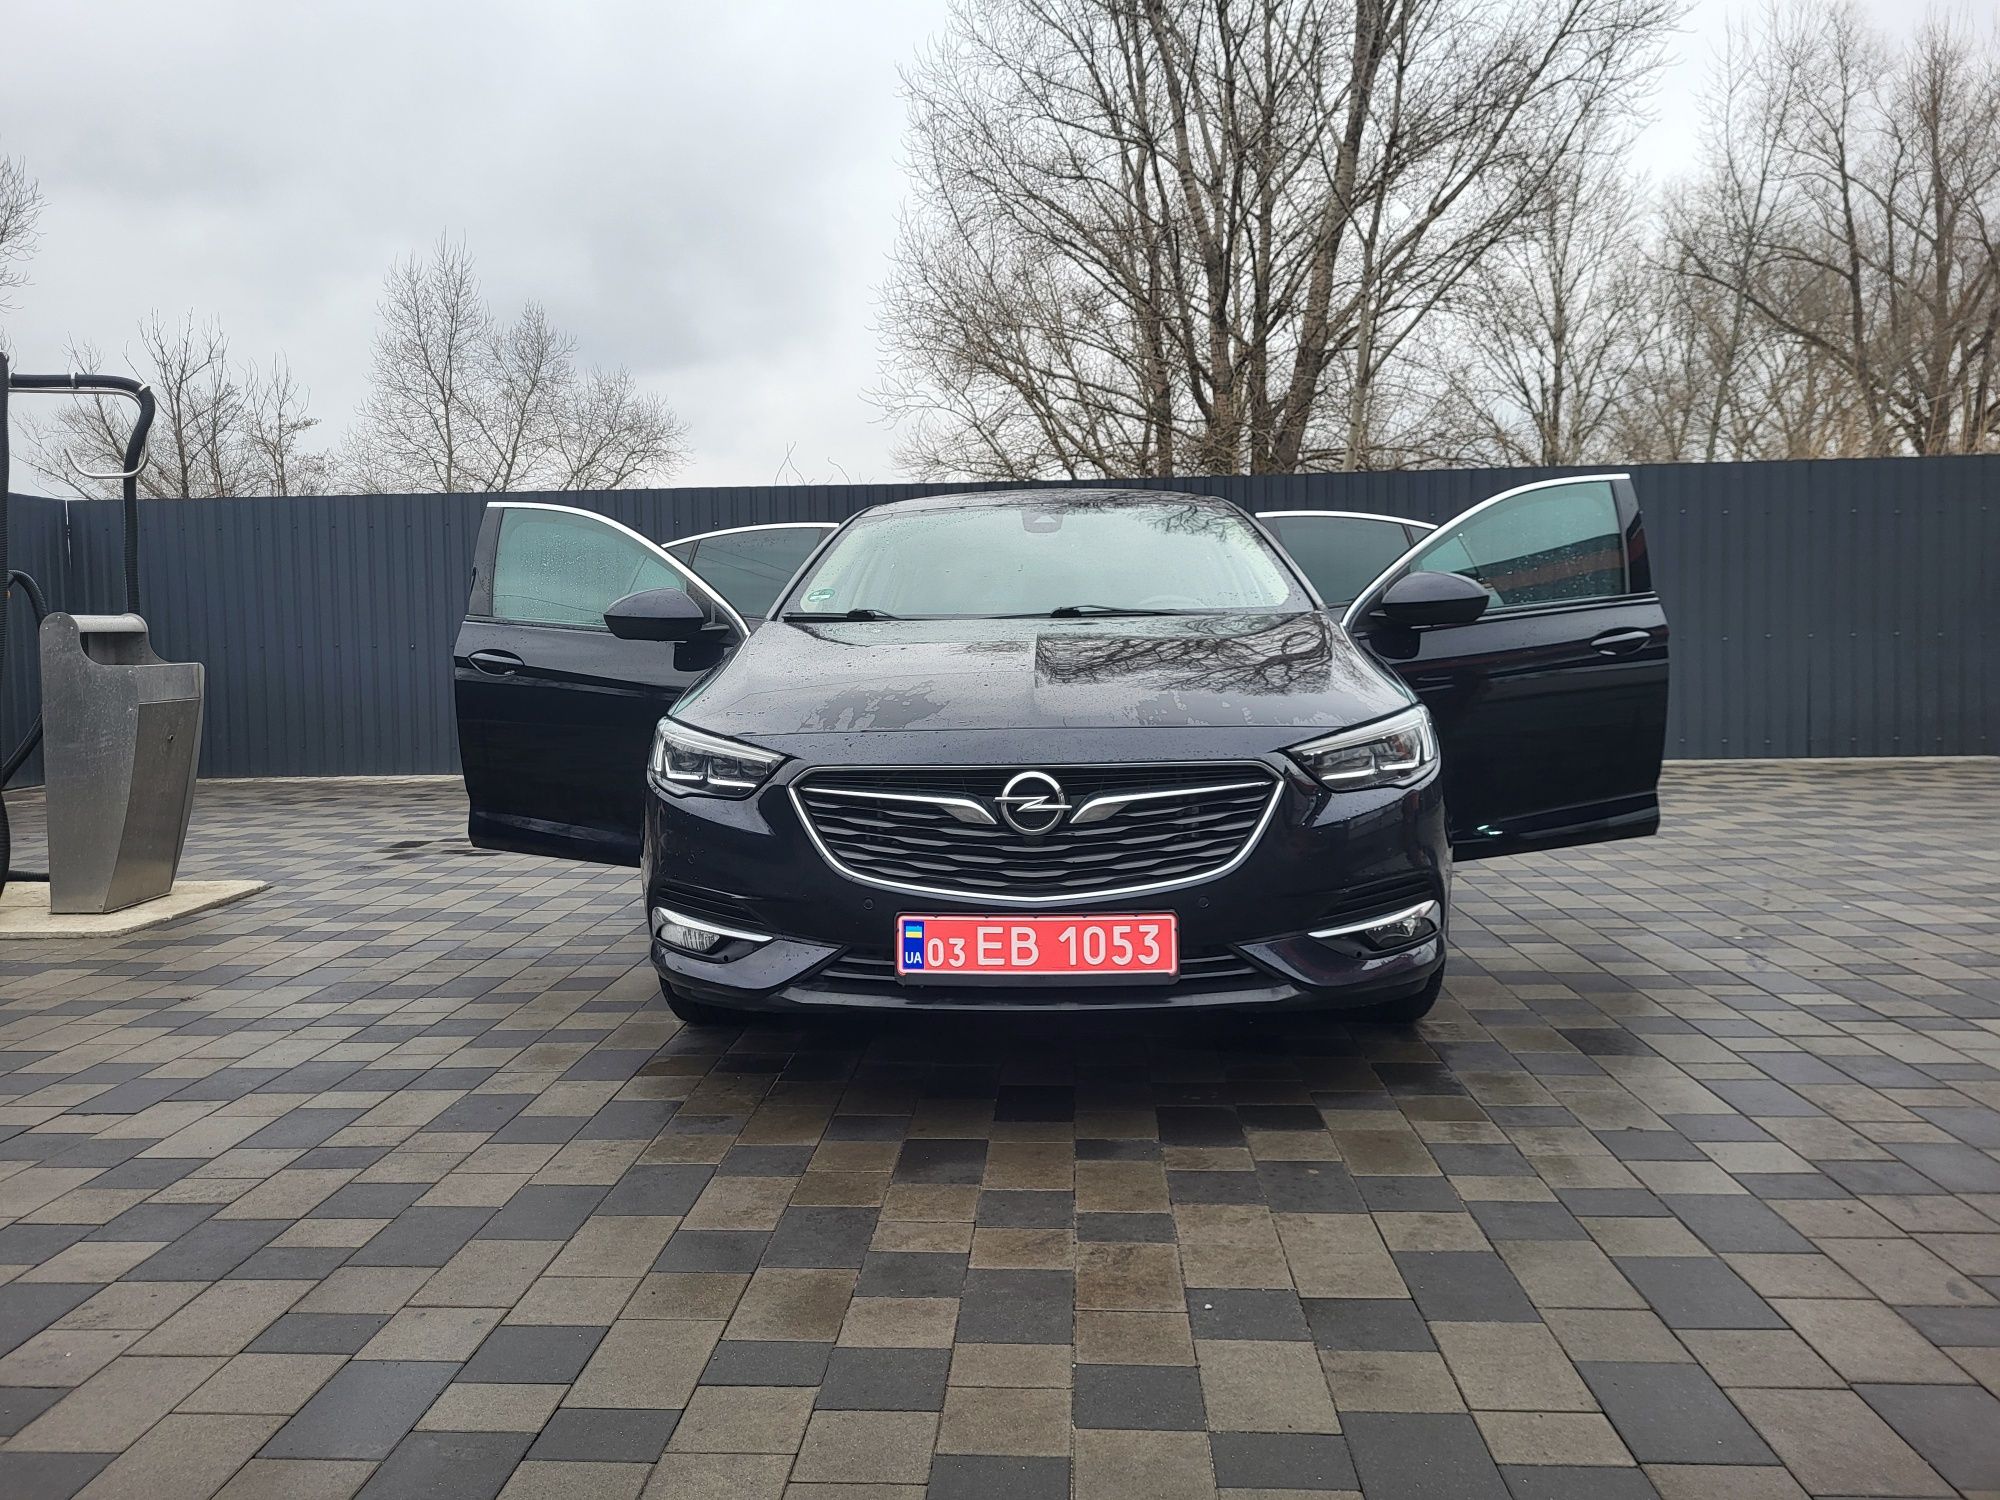 Opel Insignia b 1.6 акпп